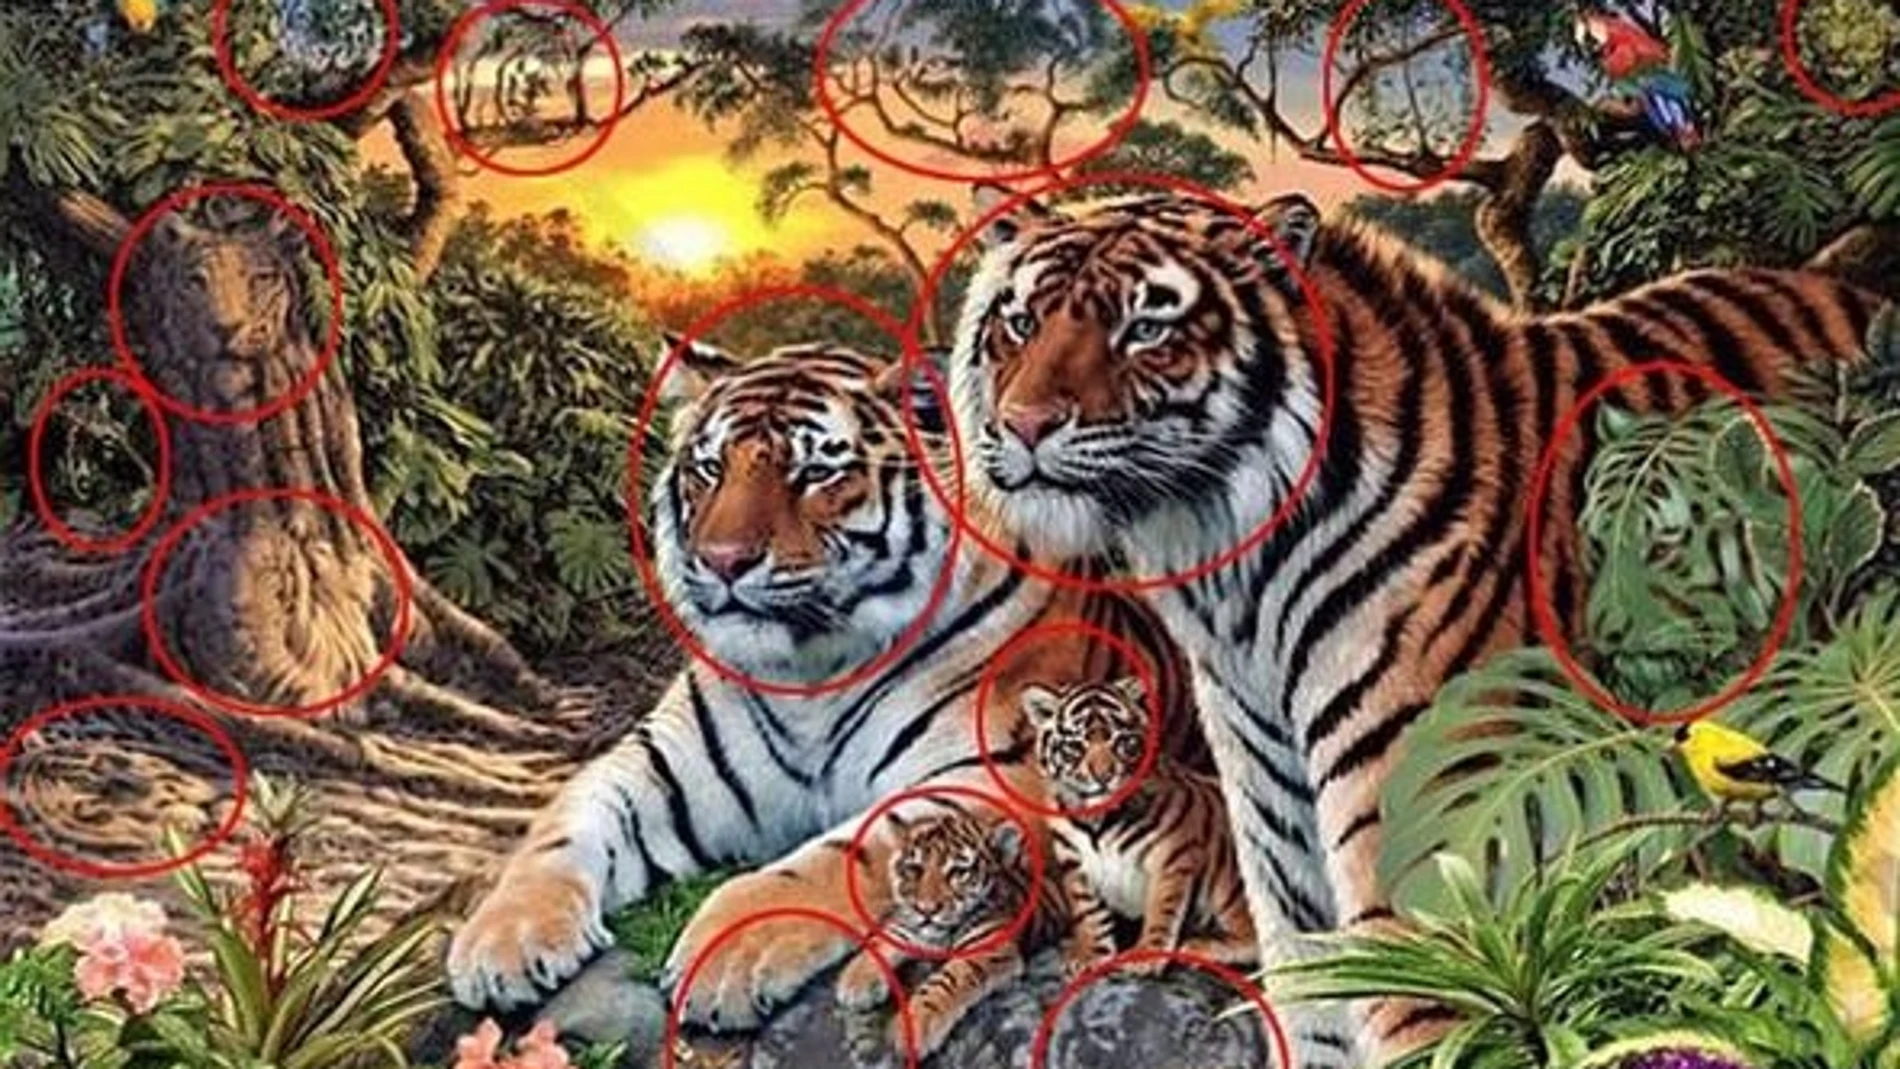 El nuevo reto que se ha hecho viral: ¿Cuántos tigres ves en la imagen?